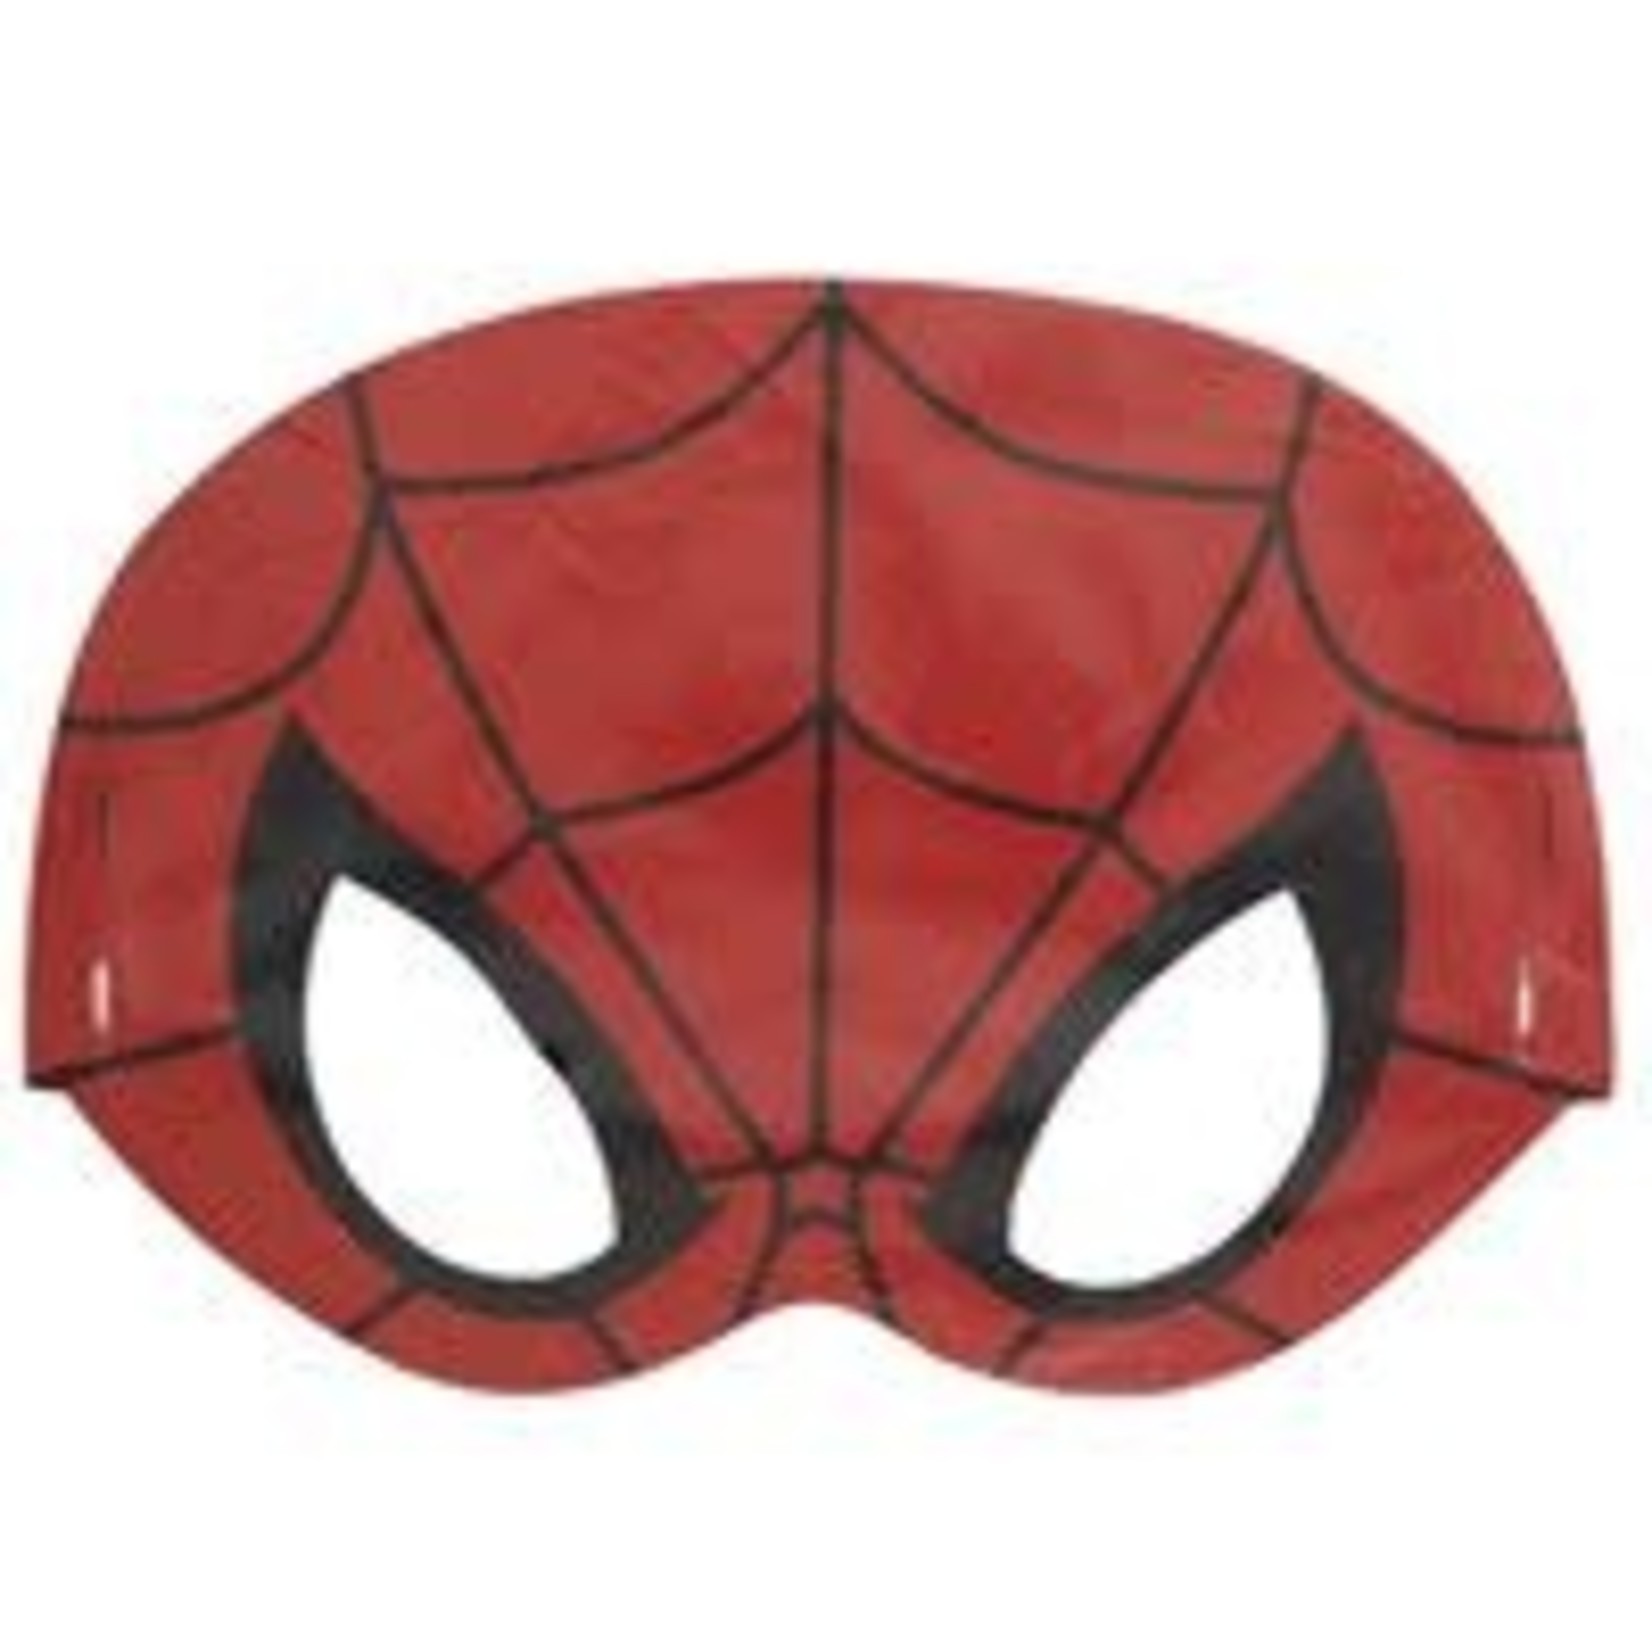 Spiderman Masks